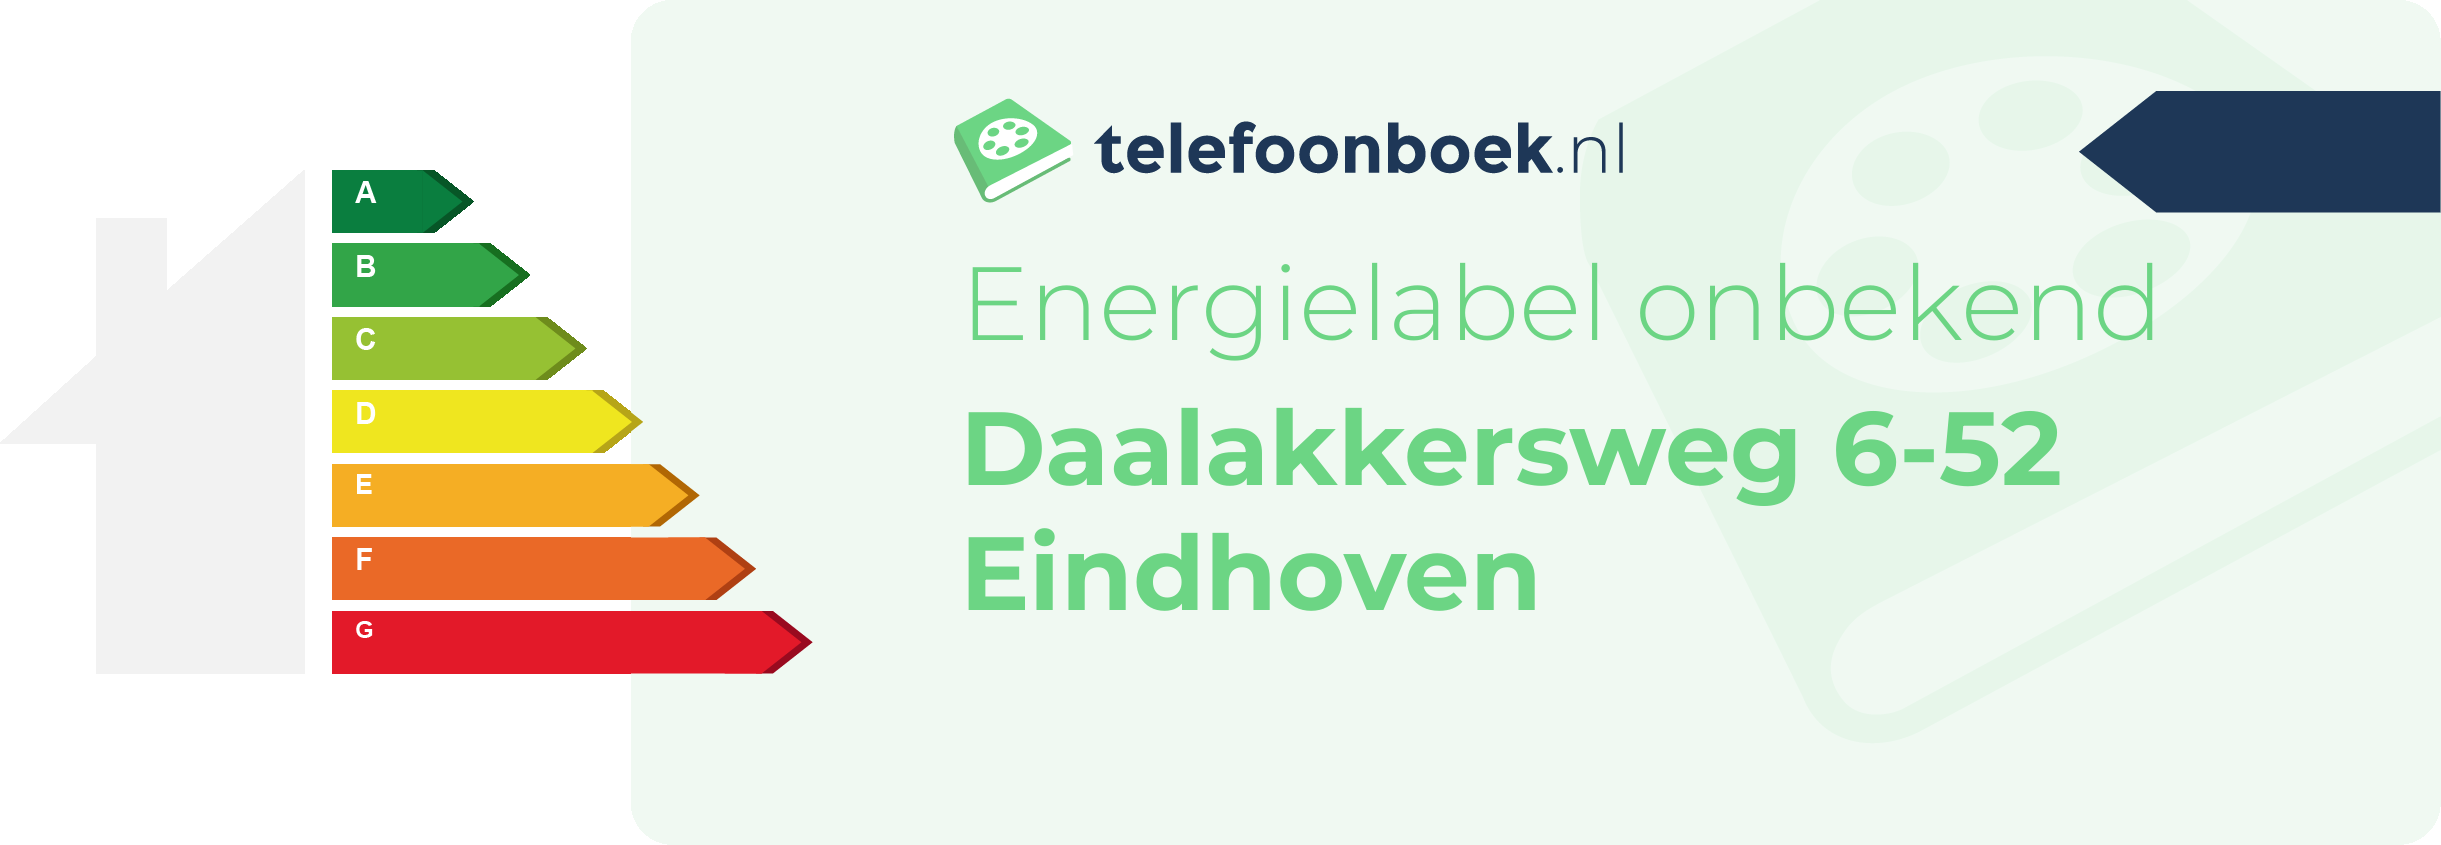 Energielabel Daalakkersweg 6-52 Eindhoven